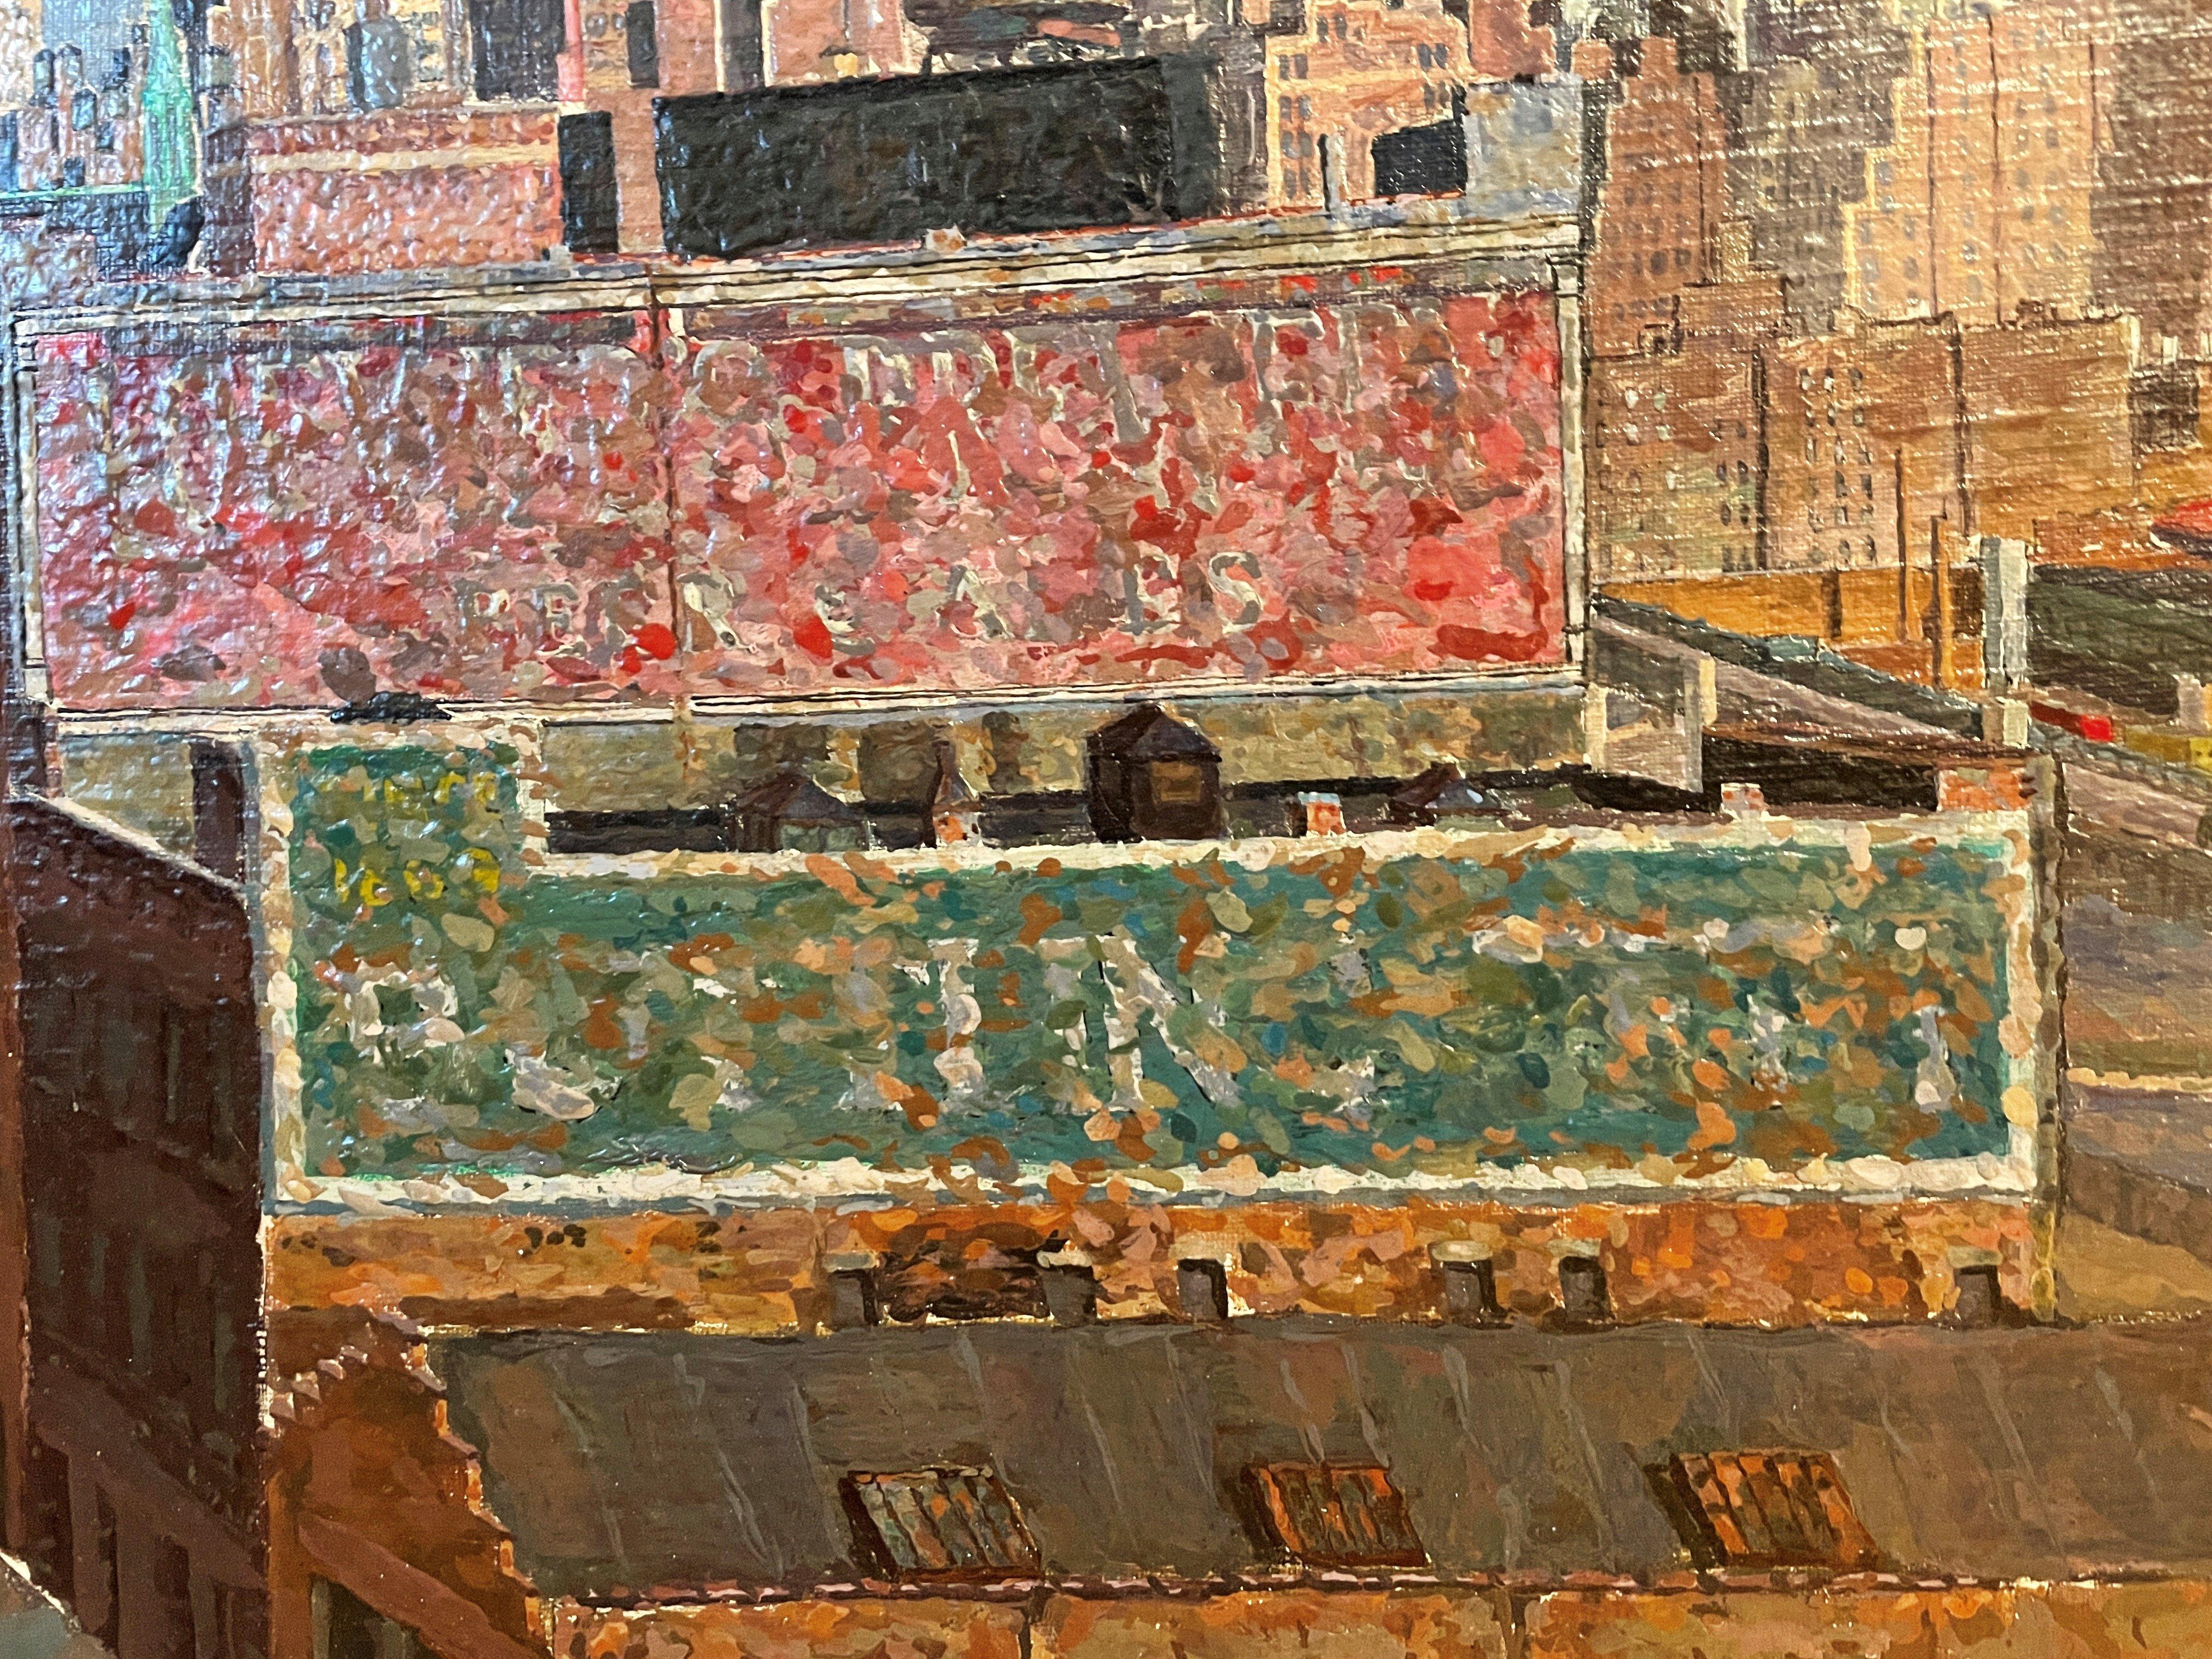 Herman Rose (1909 - 2007)
Manhattan Looking East (Besichtigung von Midtown), 1952-54
Öl auf Leinwand, Öl
26 x 28 Zoll
rechts unten signiert

Der Künstler von Fairfield Porter schrieb 1955 in ArtNews einen Essay über dieses Gemälde. Erkundigen Sie